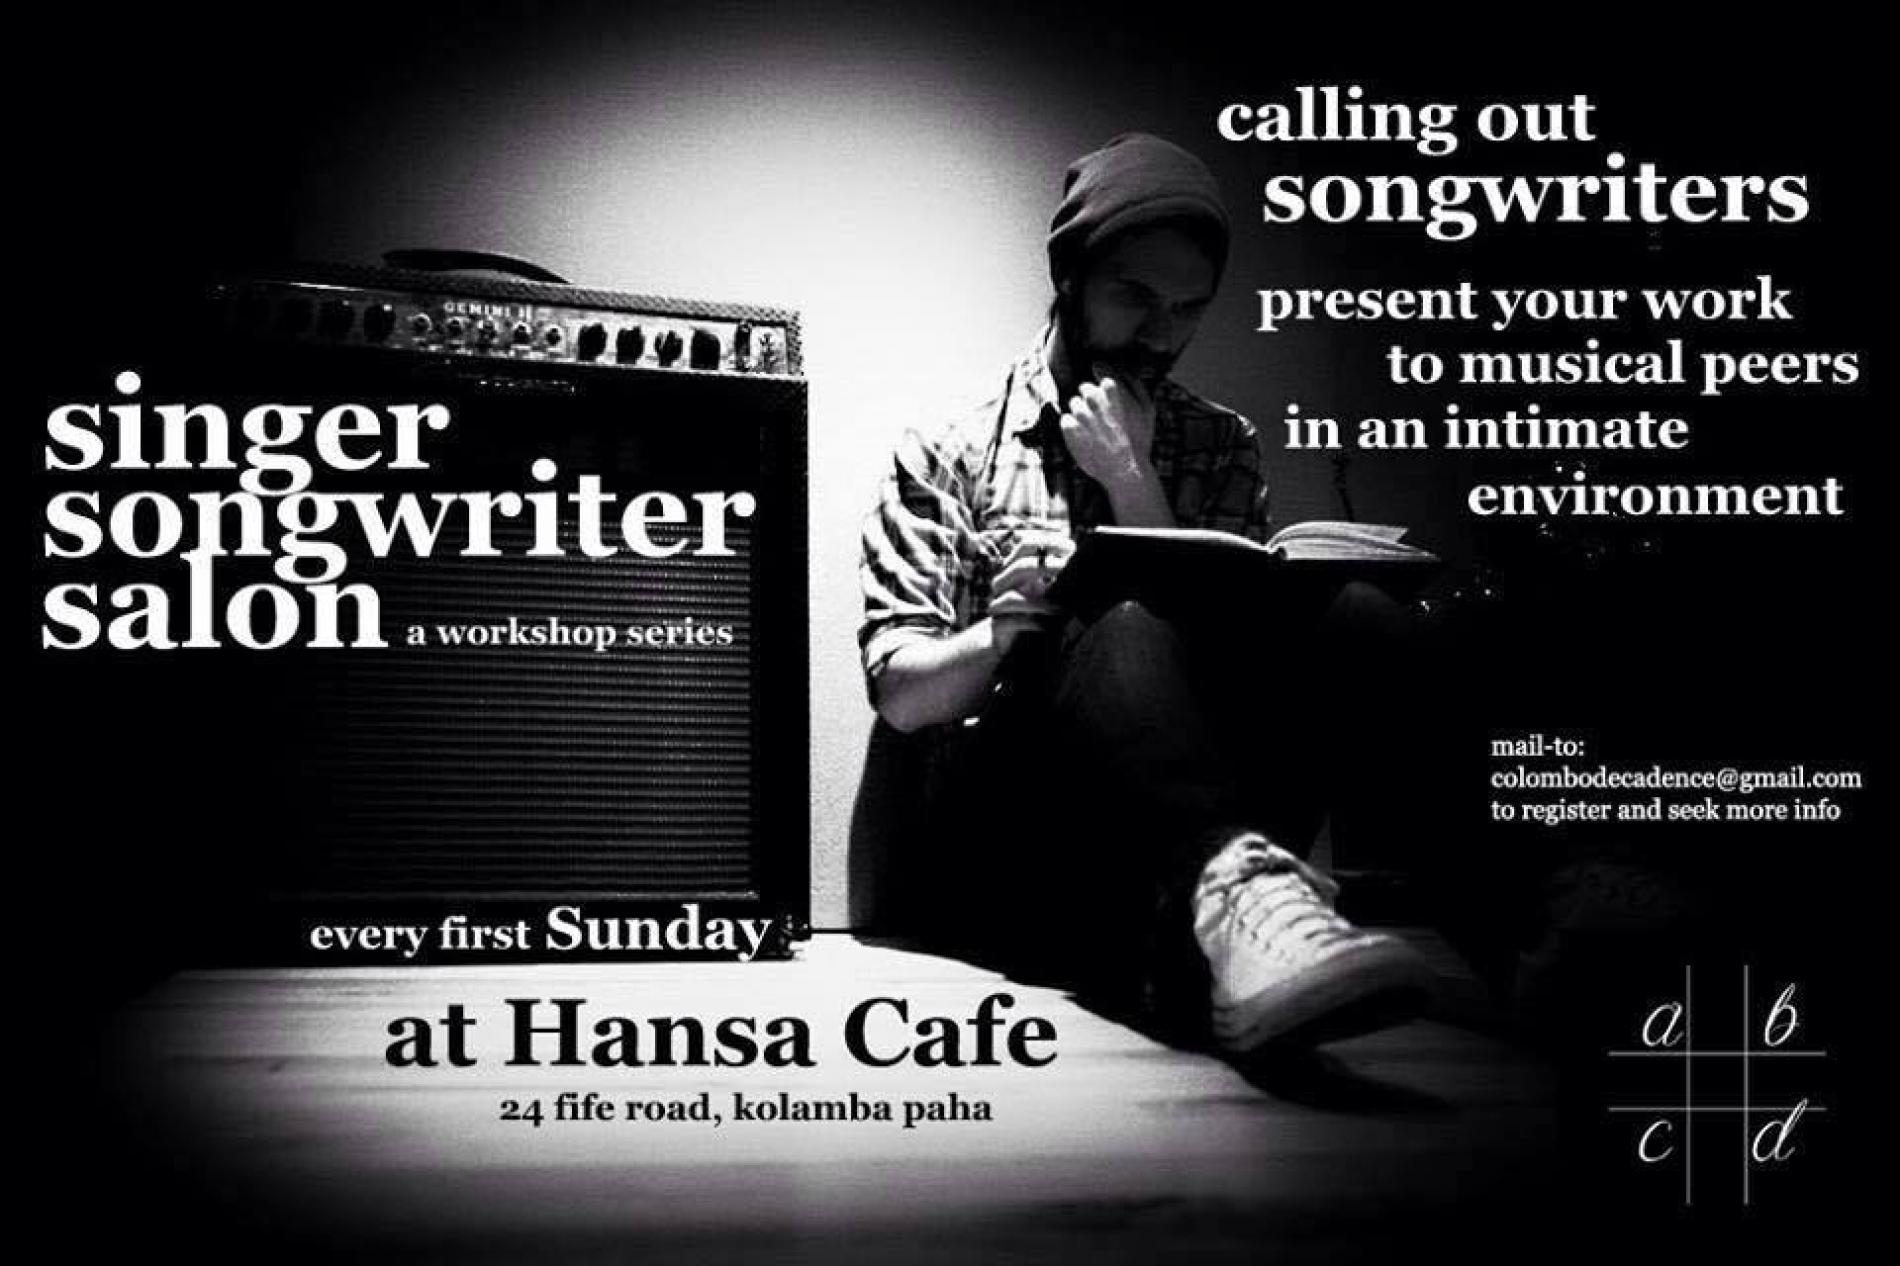 The Singer Songwriter Salon